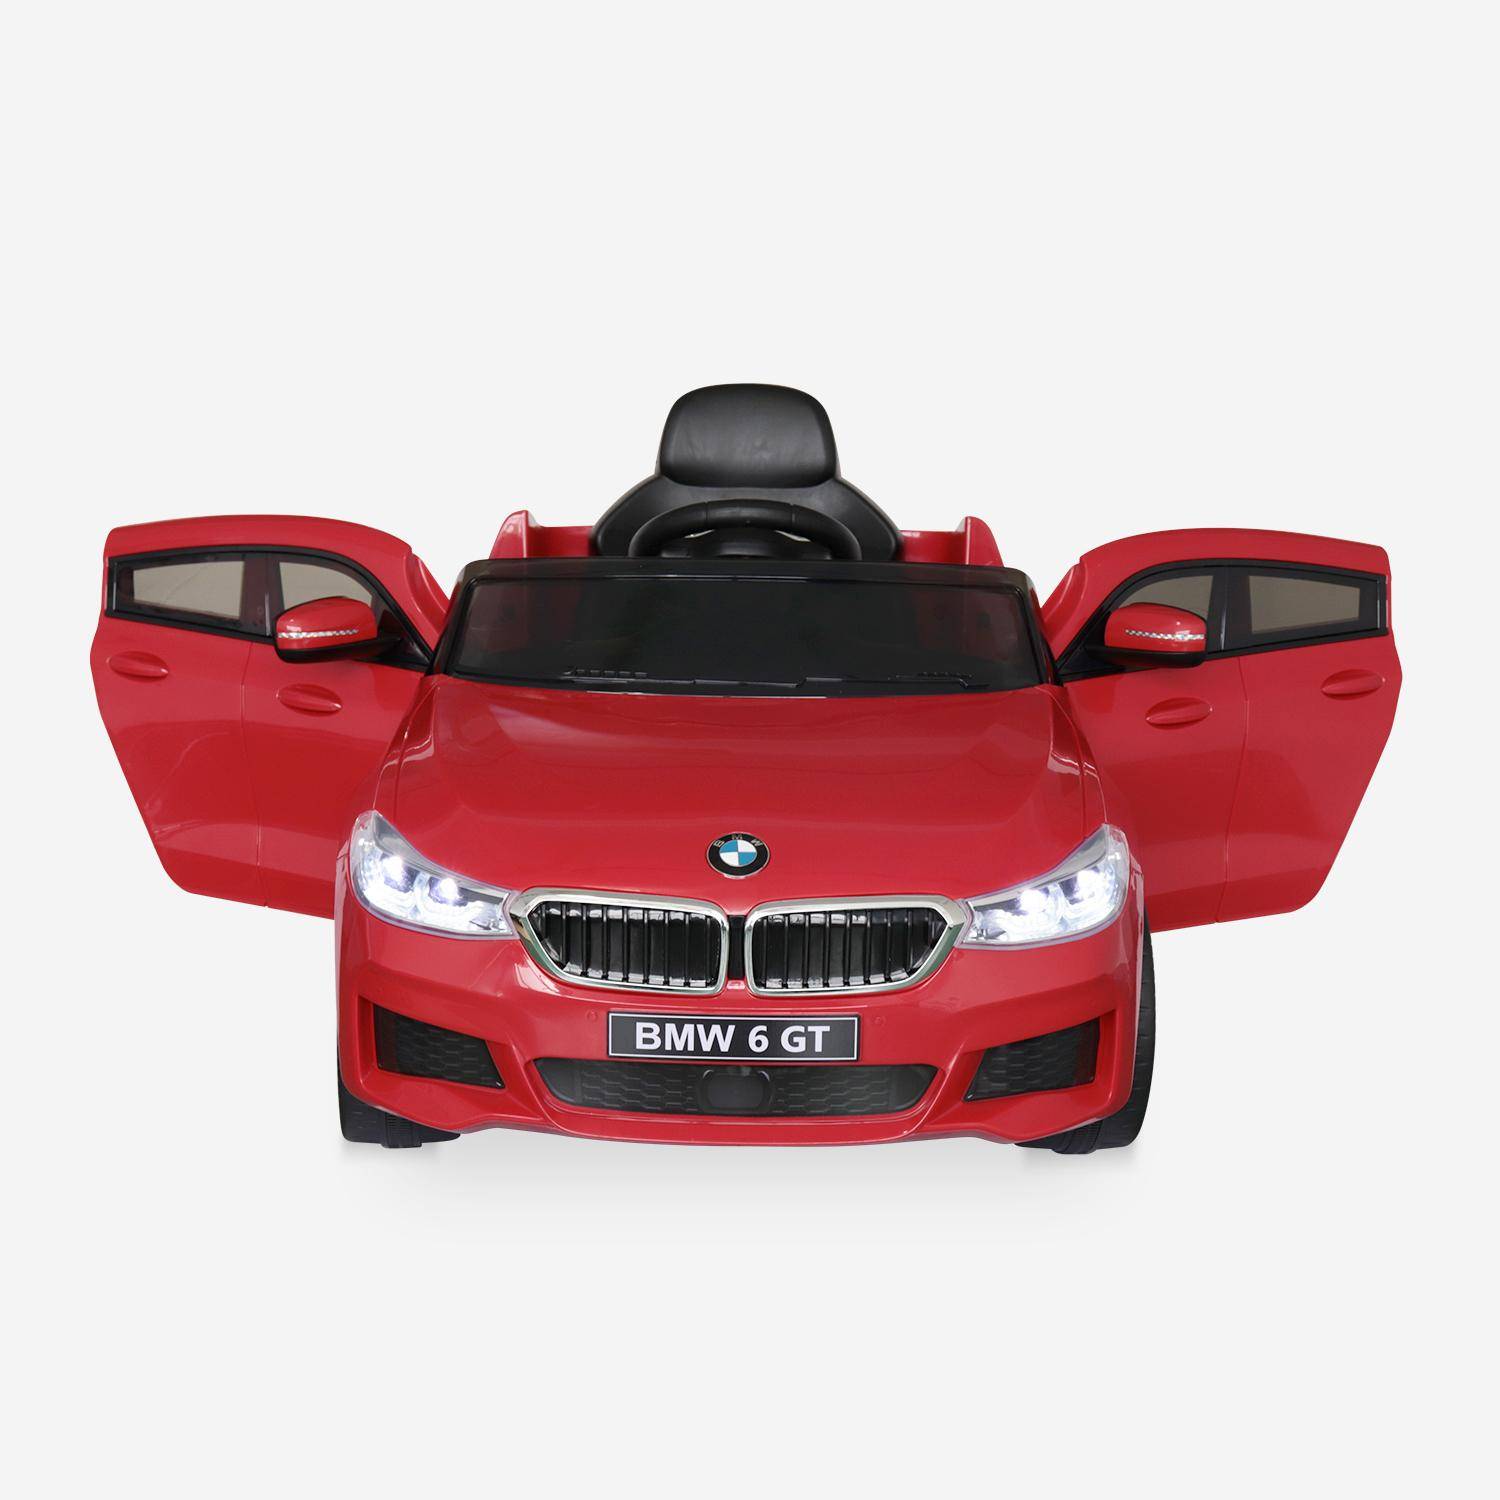 BMW Serie 6 GT Gran Turismo rossa, macchina elettrica per bambini 12V 4 Ah, 1 posto, con autoradio e telecomando Photo4